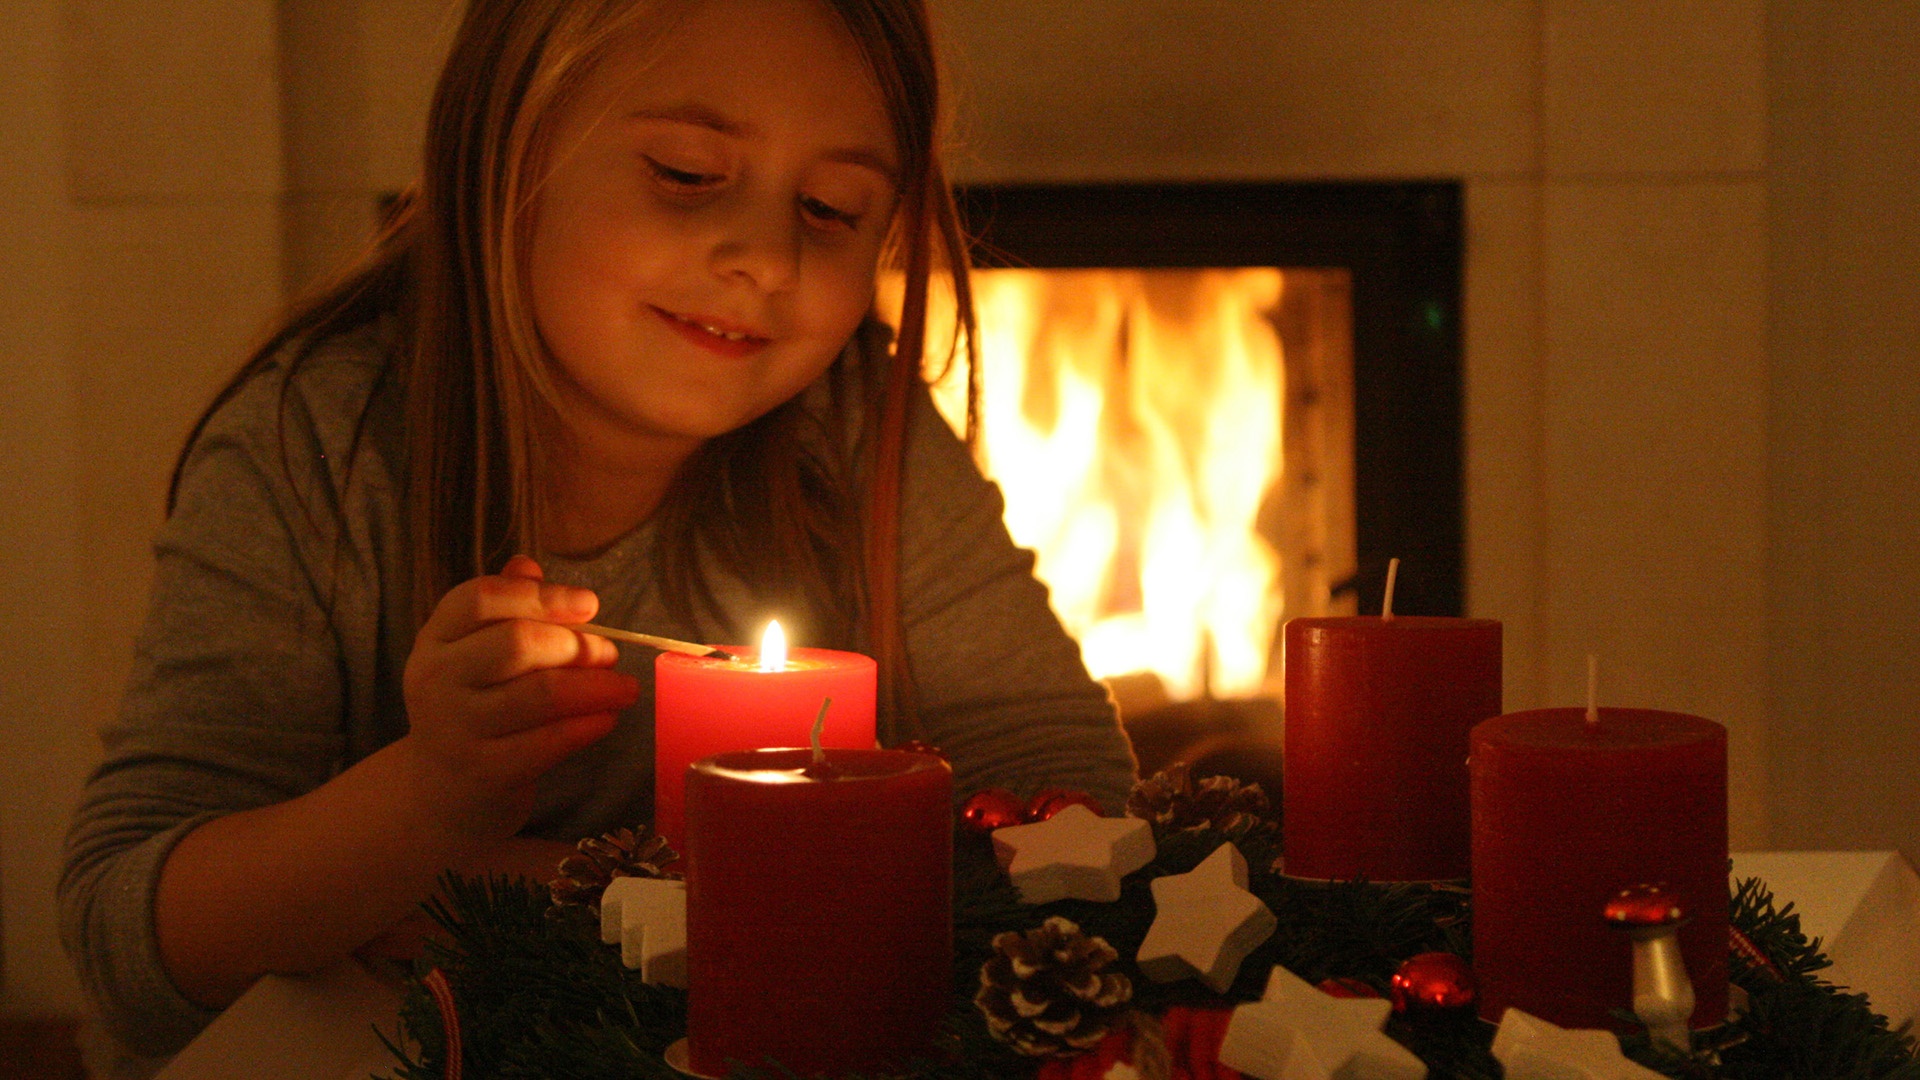 Kind zündet erste Kerze des Adventskranzes an